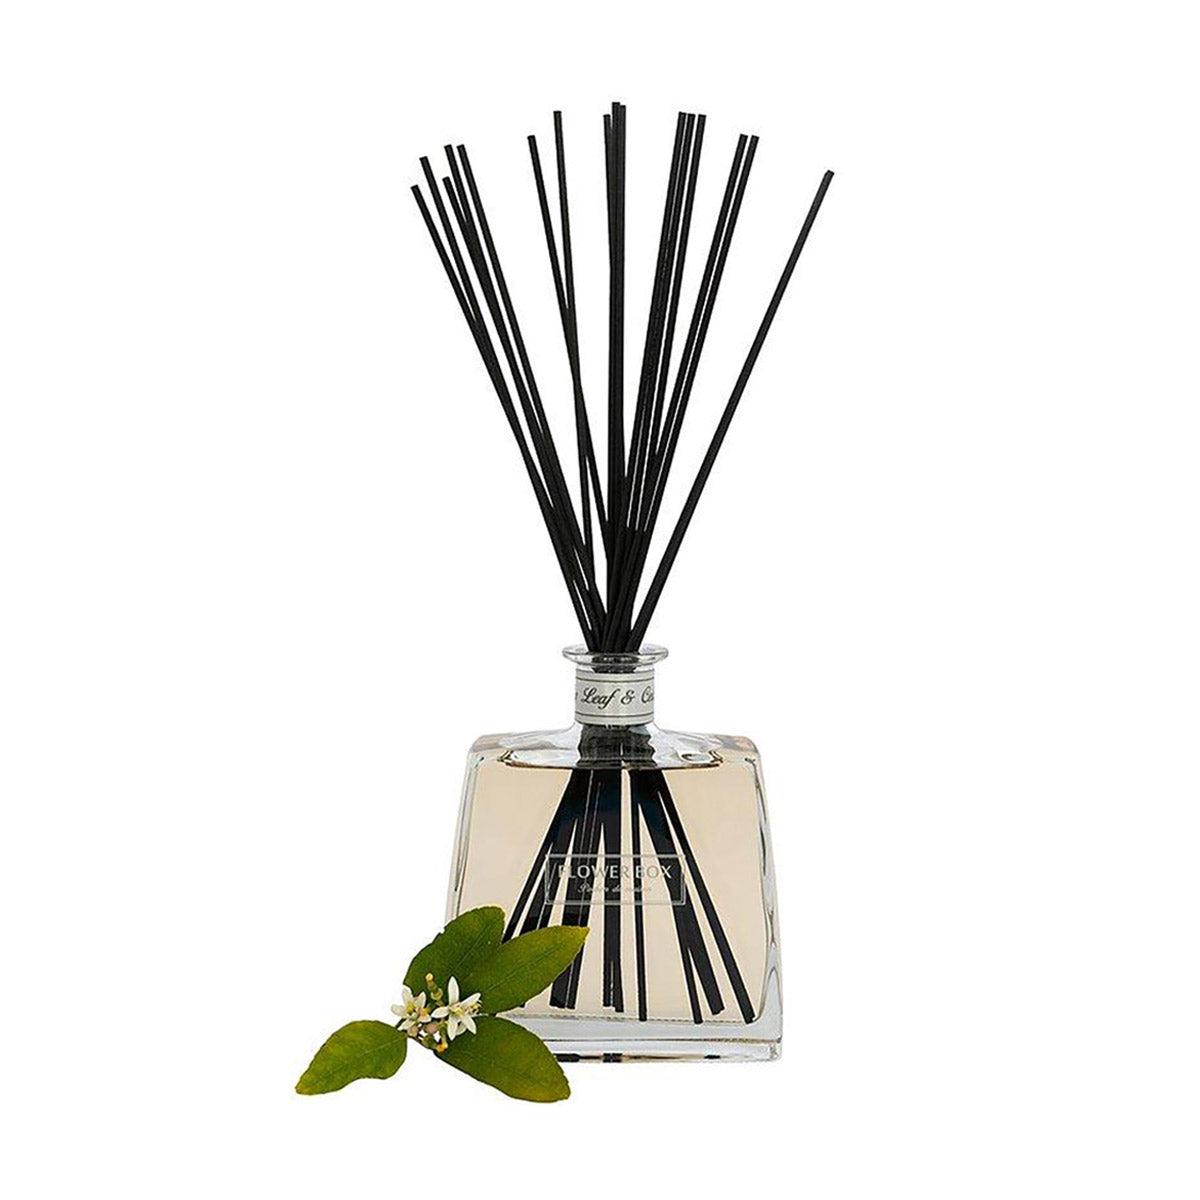 Fig Leaf & Cedar Hallmark Diffuser 700mL-Candles & Fragrance-Flower Box-The Bay Room